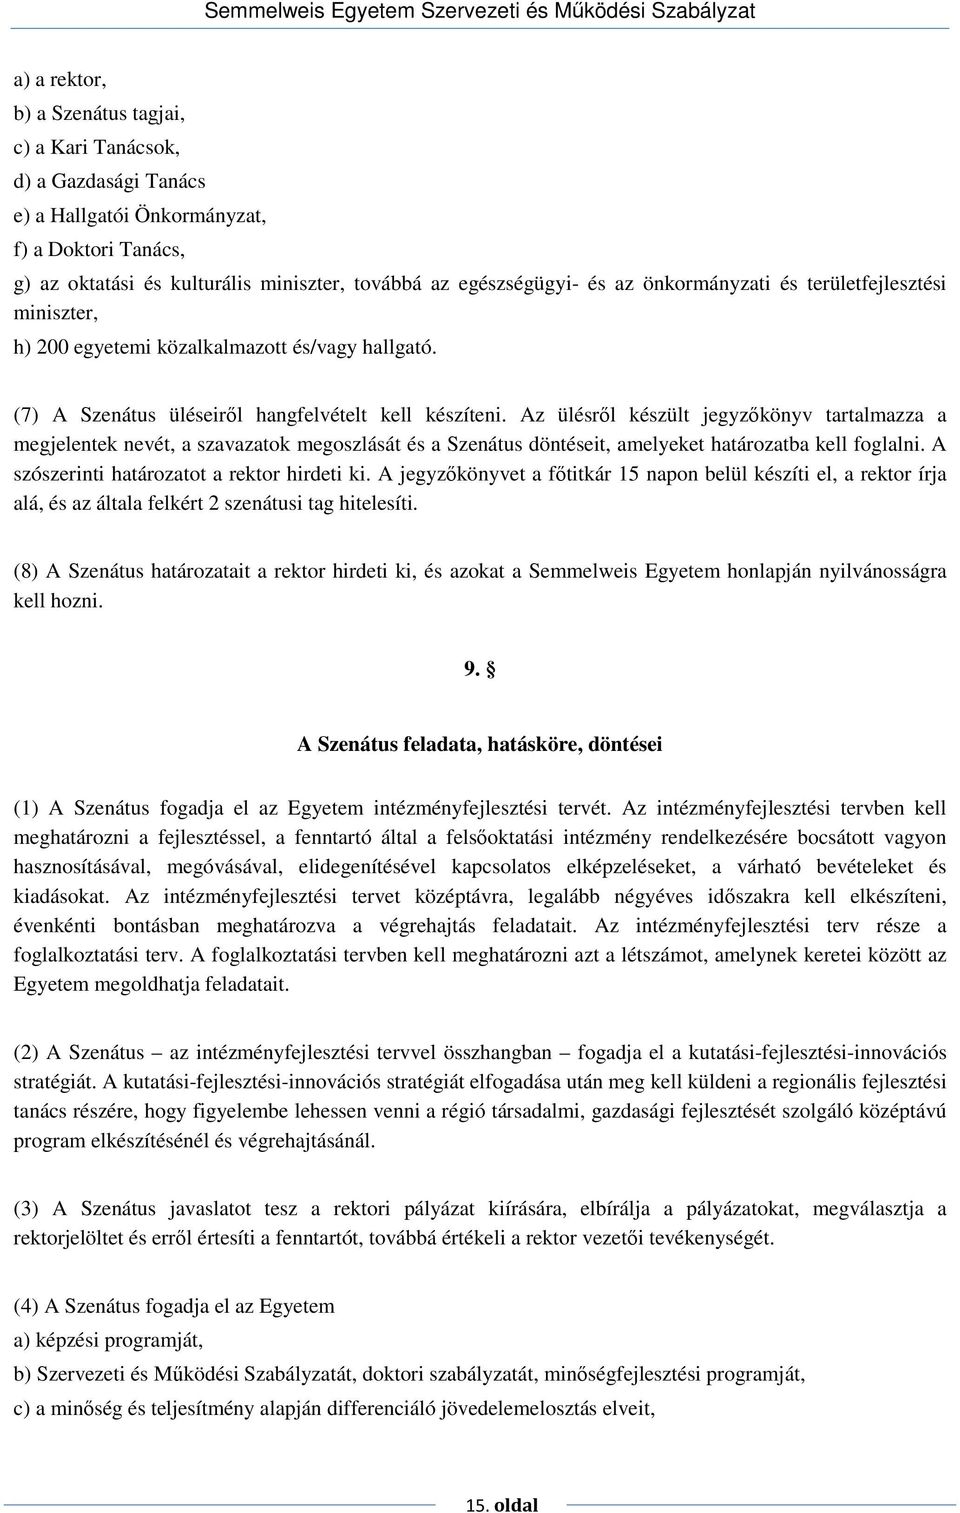 Az ülésrıl készült jegyzıkönyv tartalmazza a megjelentek nevét, a szavazatok megoszlását és a Szenátus döntéseit, amelyeket határozatba kell foglalni. A szószerinti határozatot a rektor hirdeti ki.